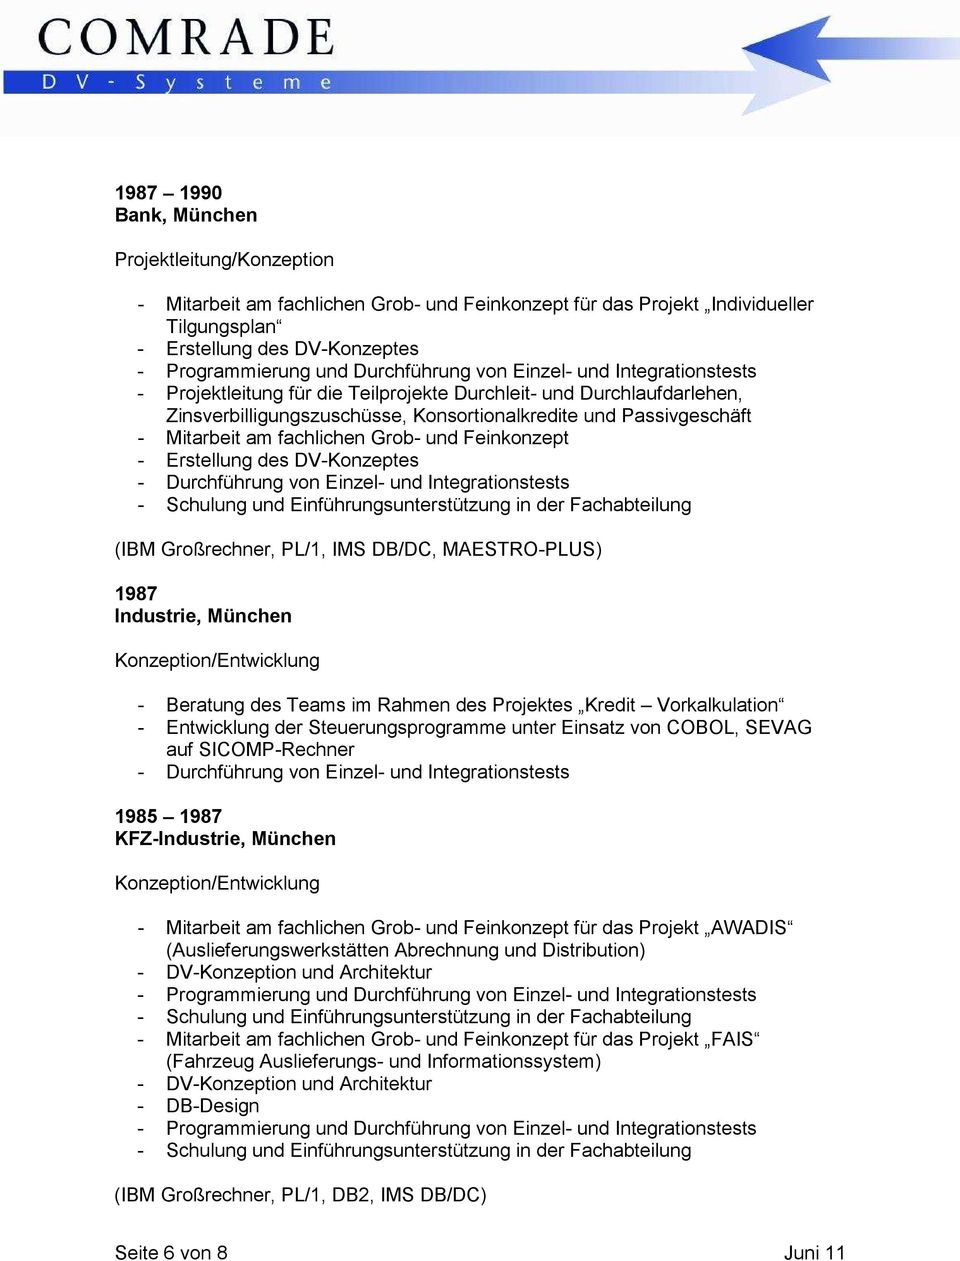 Einzel- und Integrationstests - Schulung und Einführungsunterstützung in der Fachabteilung (IBM Großrechner, PL/1, IMS DB/DC, MAESTRO-PLUS) 1987 Industrie, München - Beratung des Teams im Rahmen des